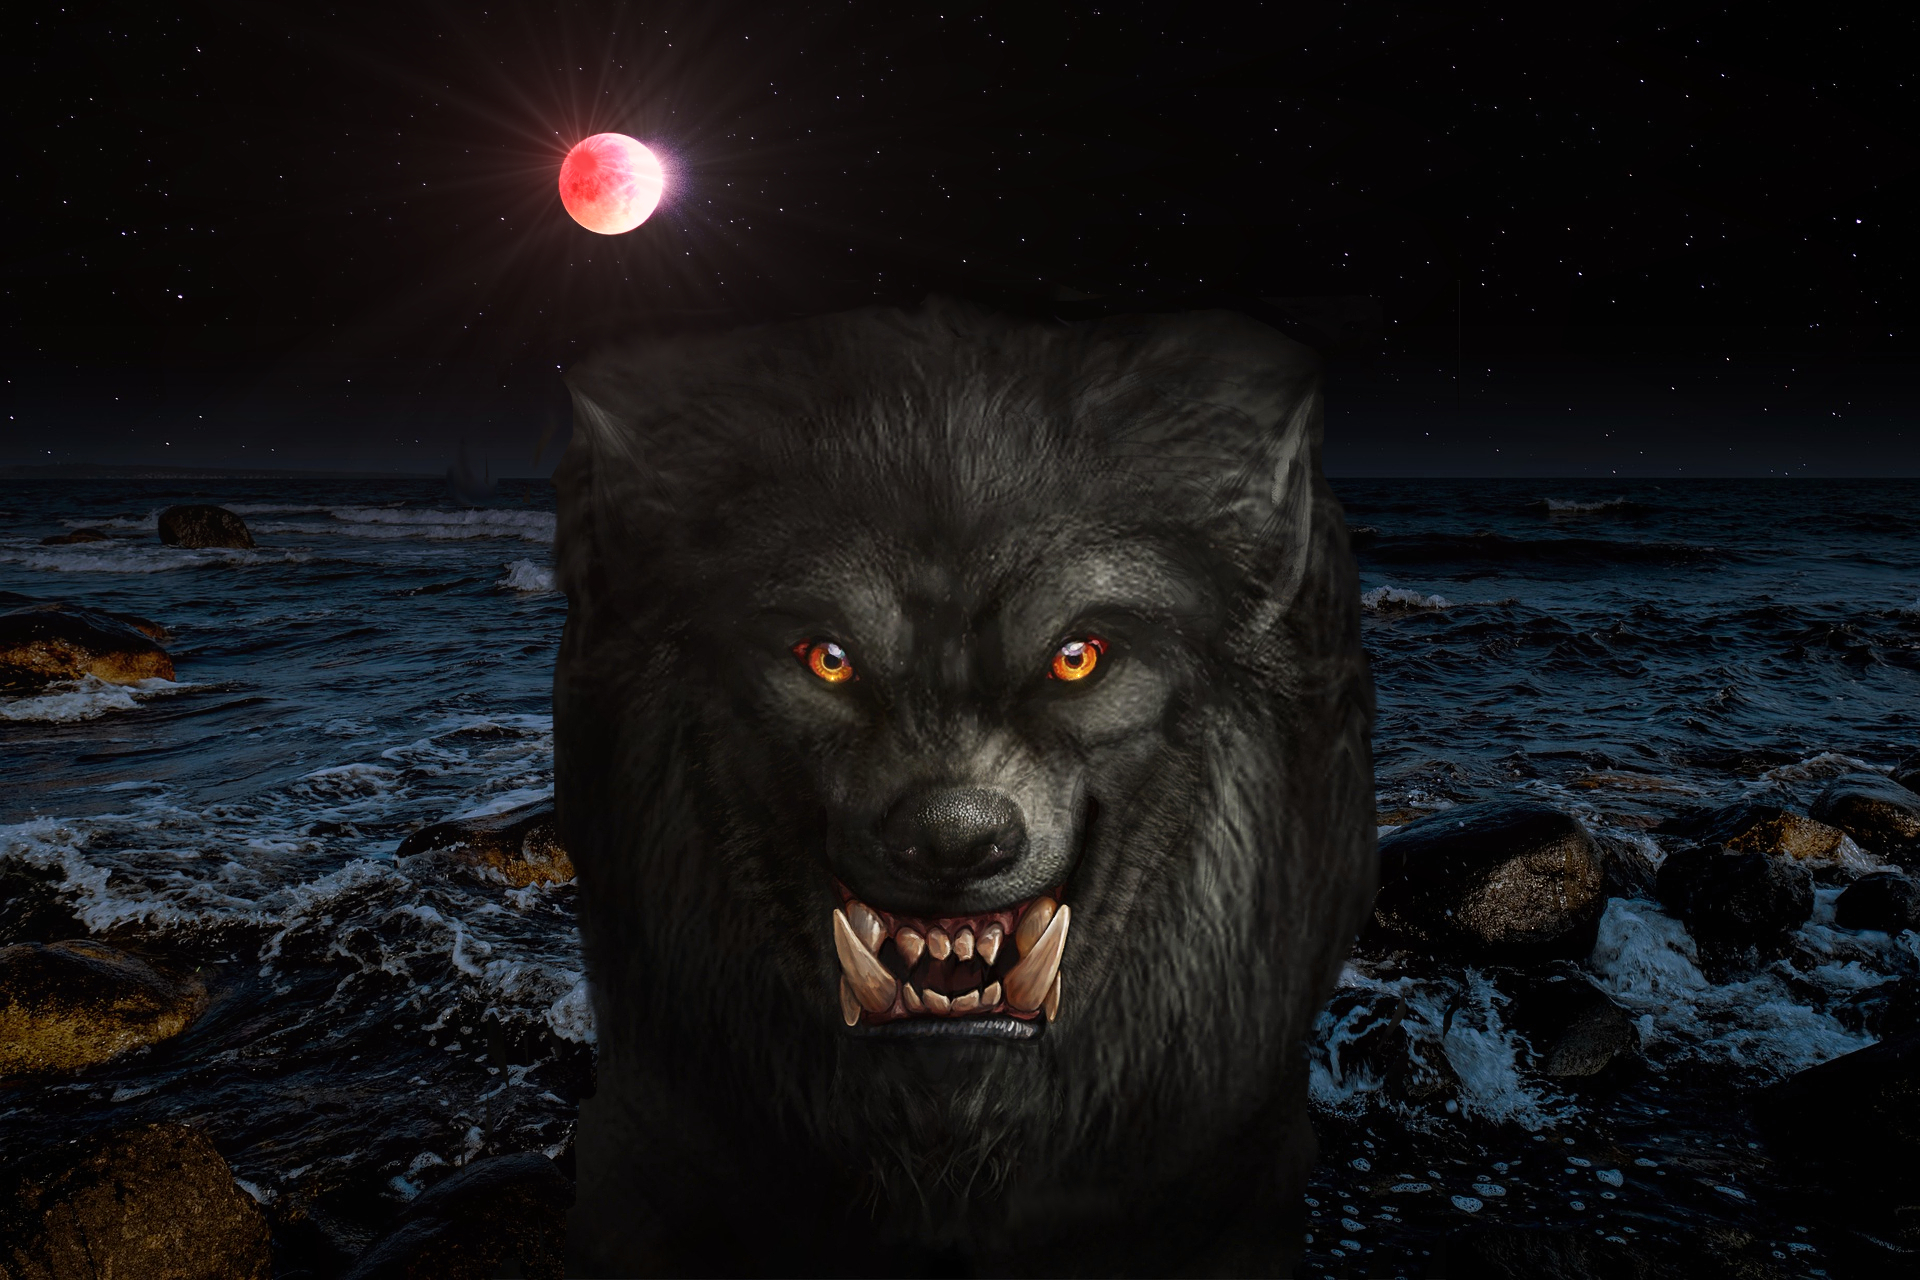 Dark Blood Moon Eclipse Werewolf Warning